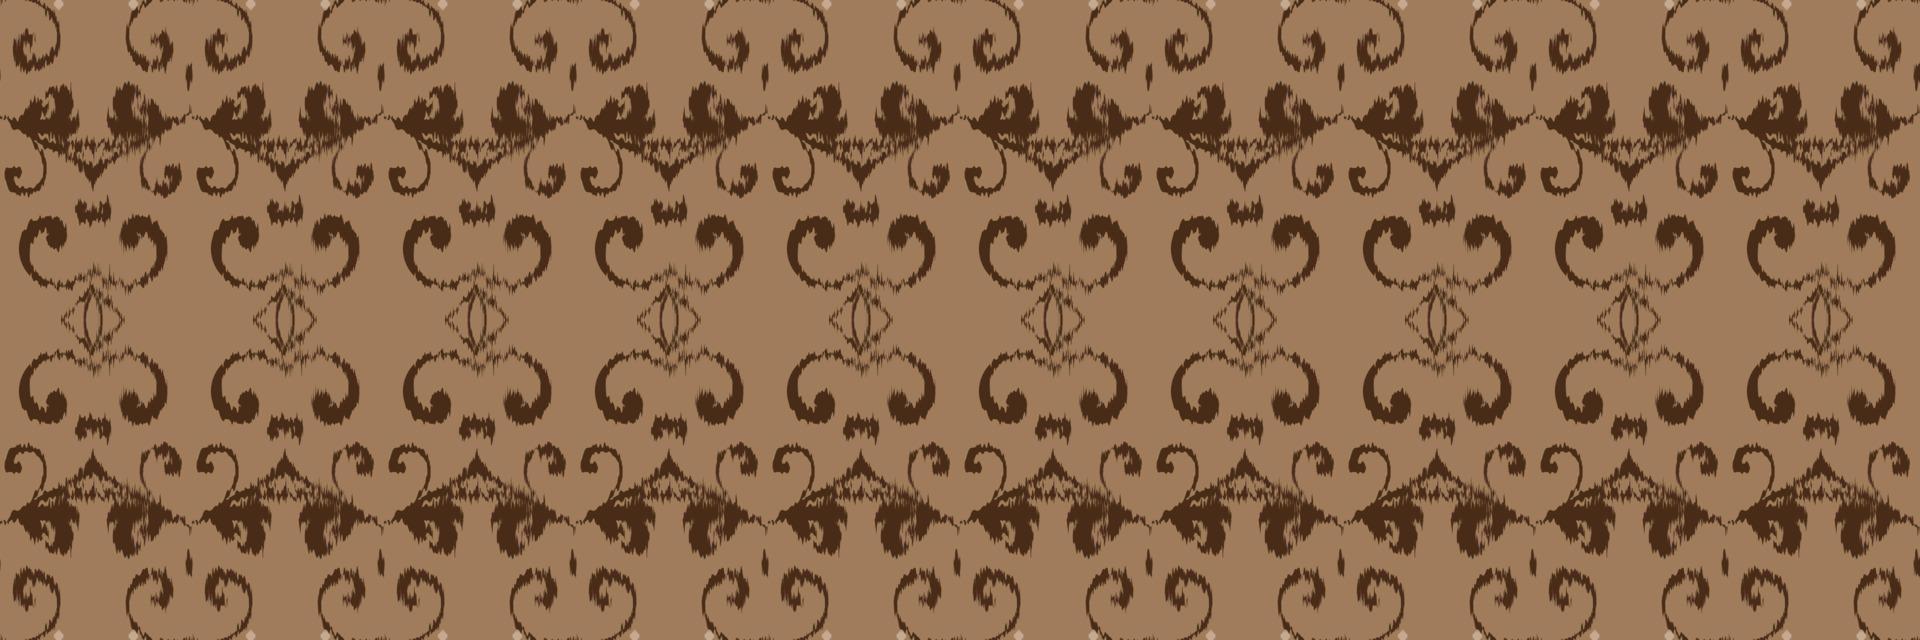 motivo têxtil batik ikat design de vetor digital sem costura padrão para impressão saree kurti borneo tecido borda escova símbolos designer de amostras